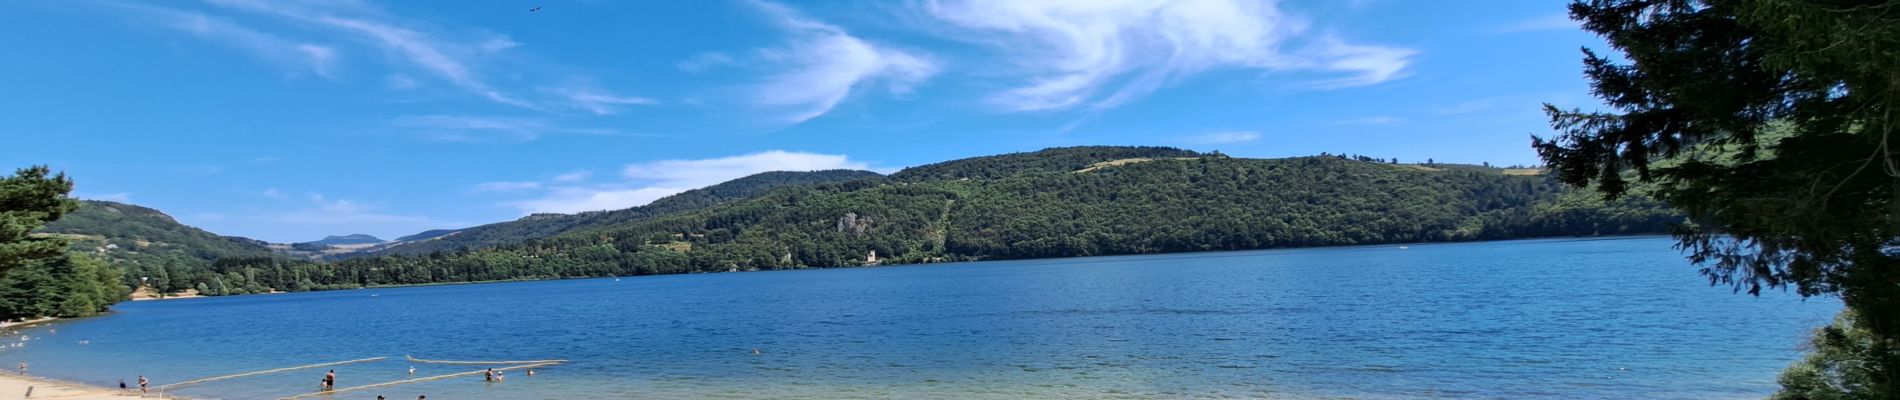 Randonnée Marche Le Lac-d'Issarlès - Grand tour lac d'Issarlès - Photo